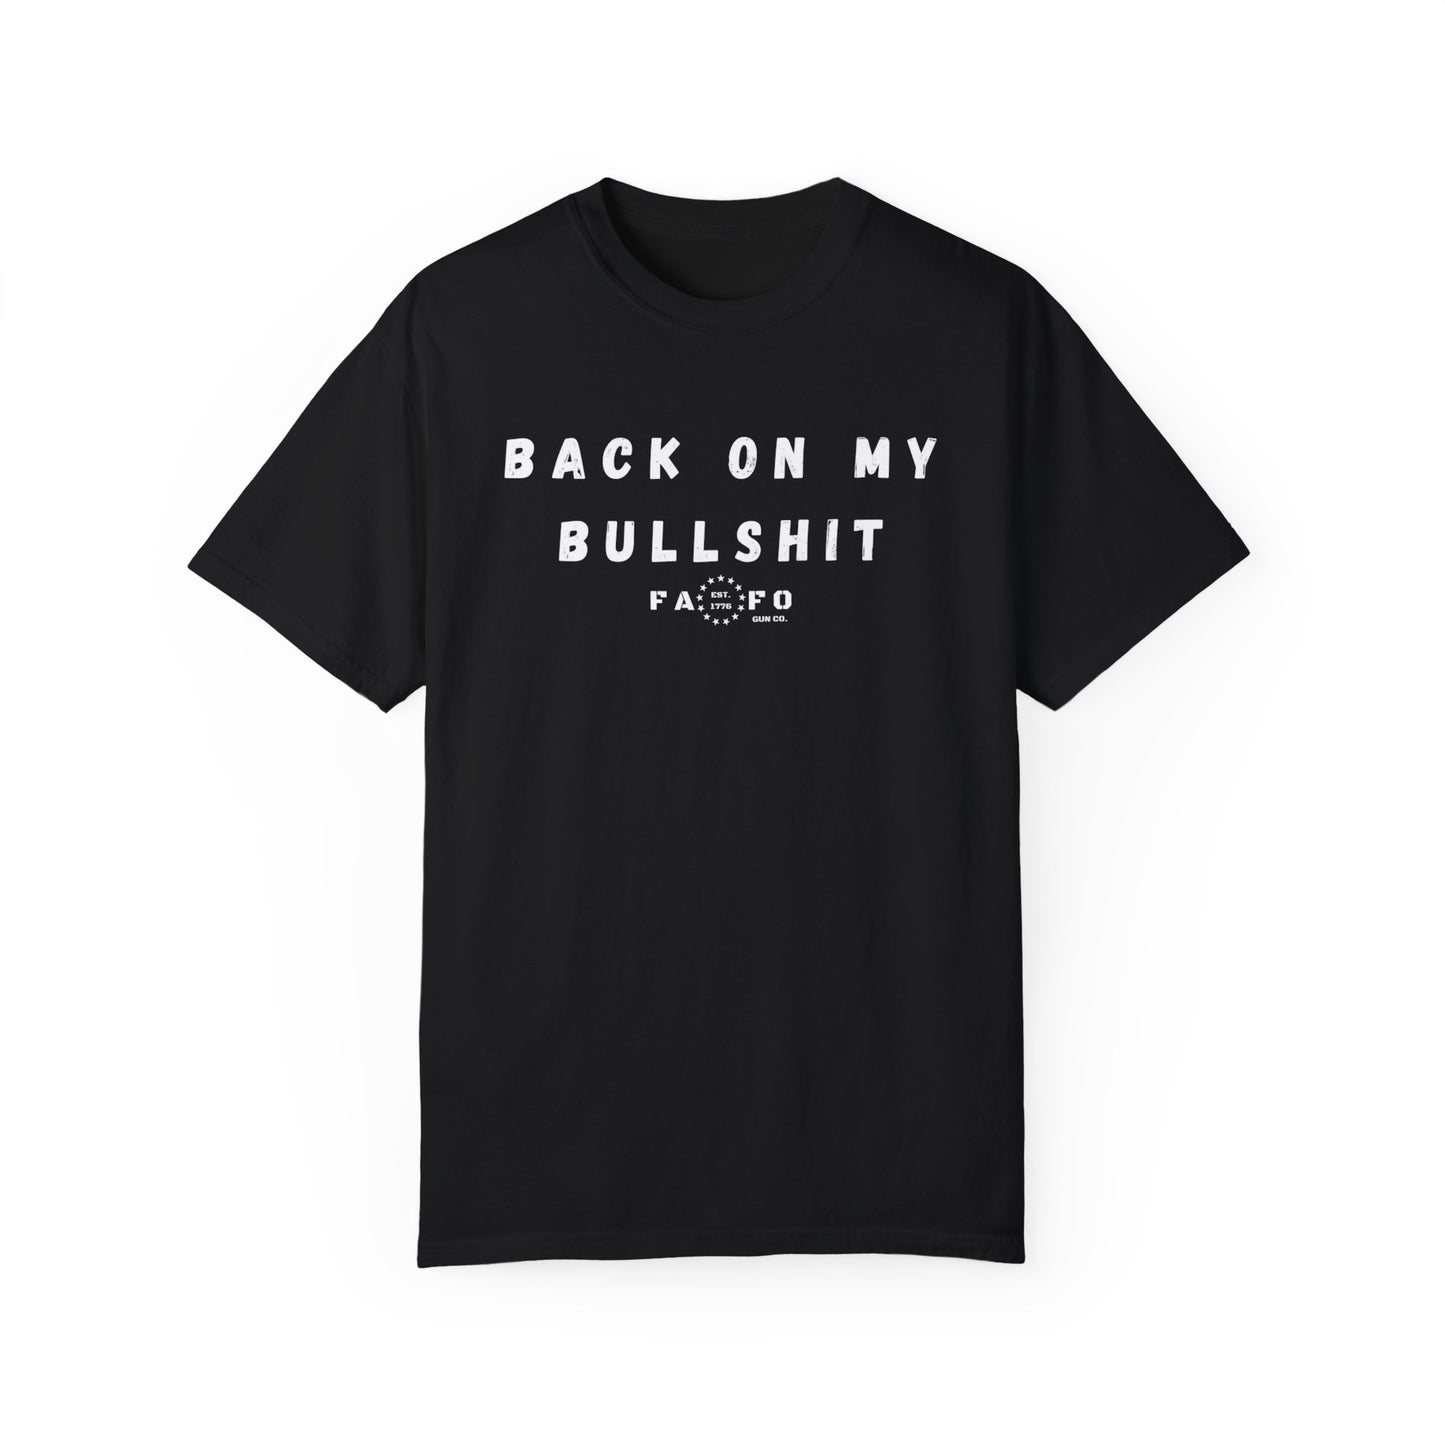 Back On My Bullshit T-shirt